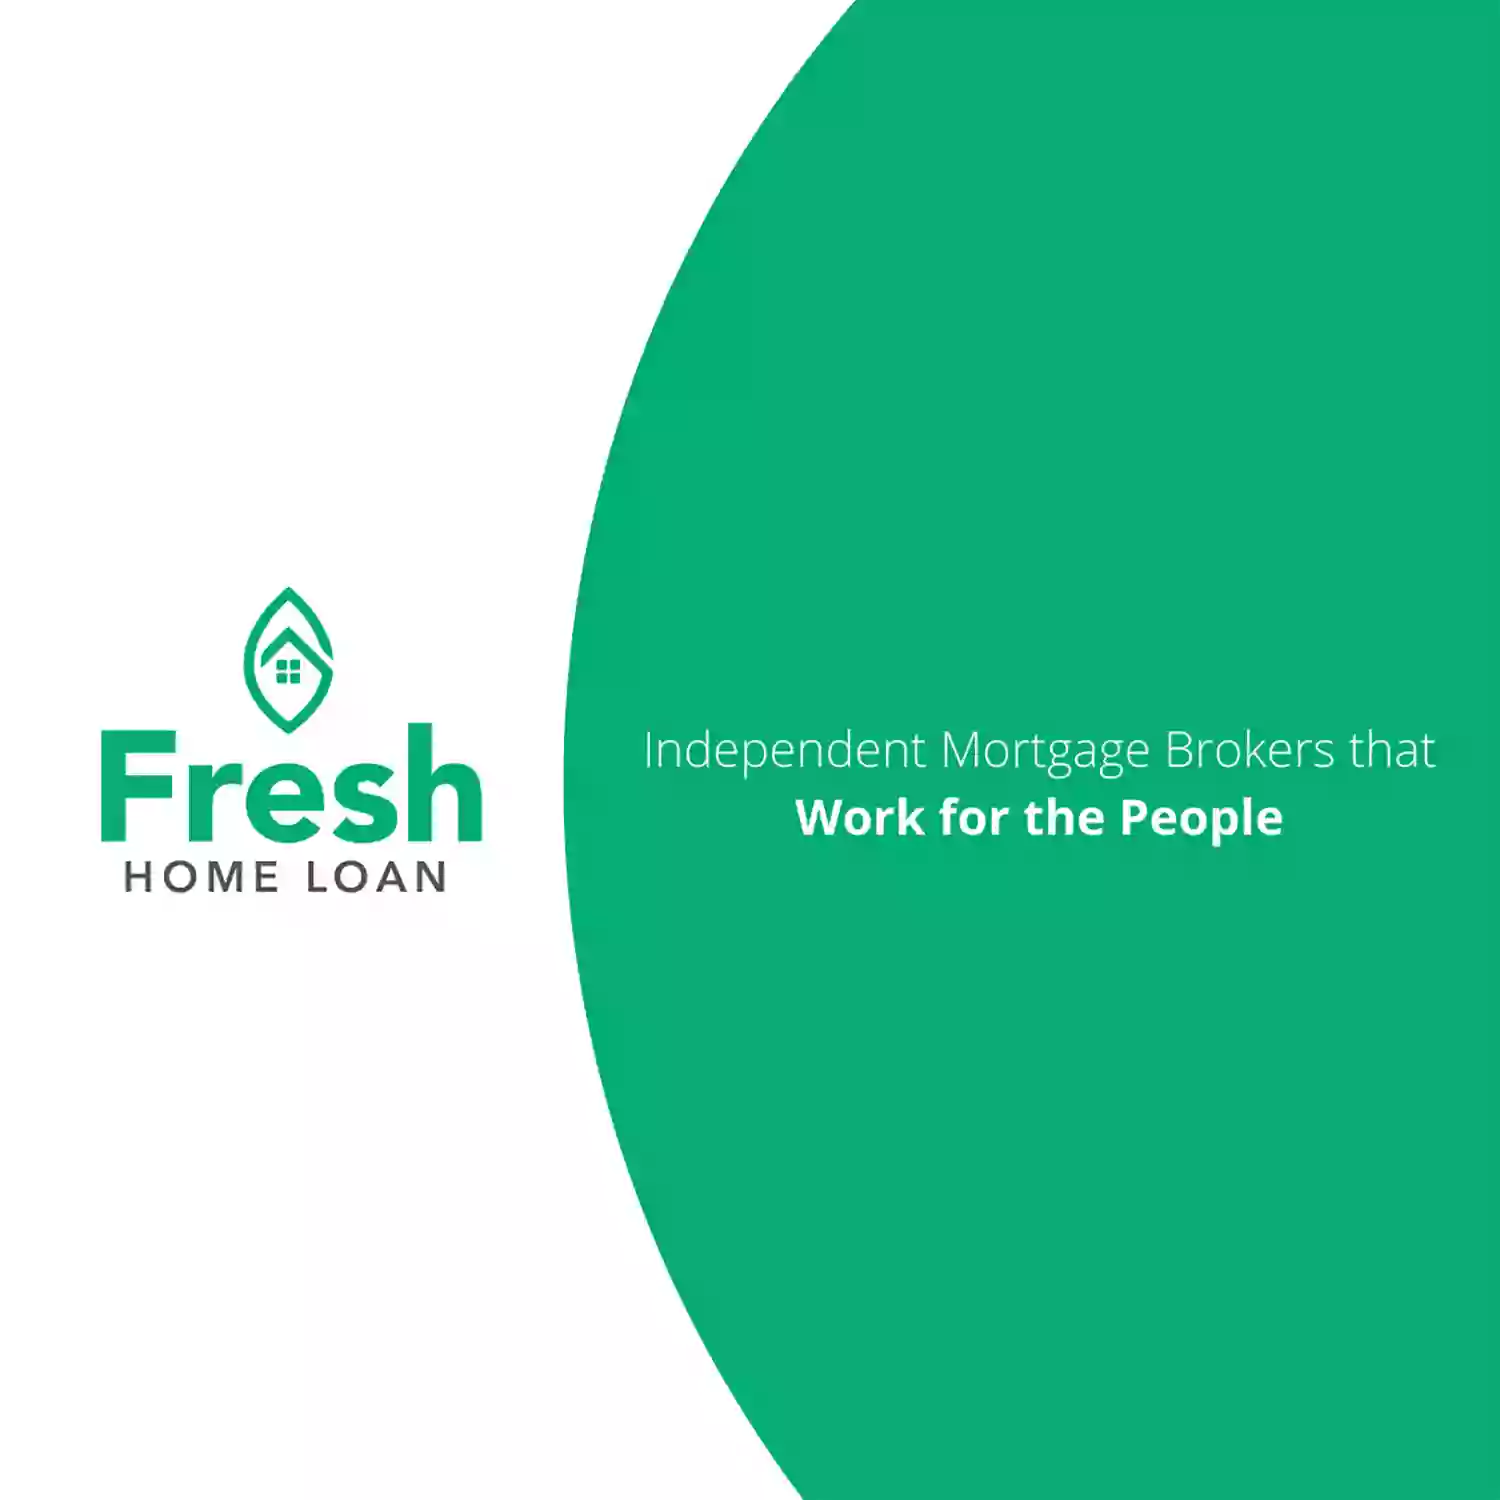 Fresh Home Loan Inc